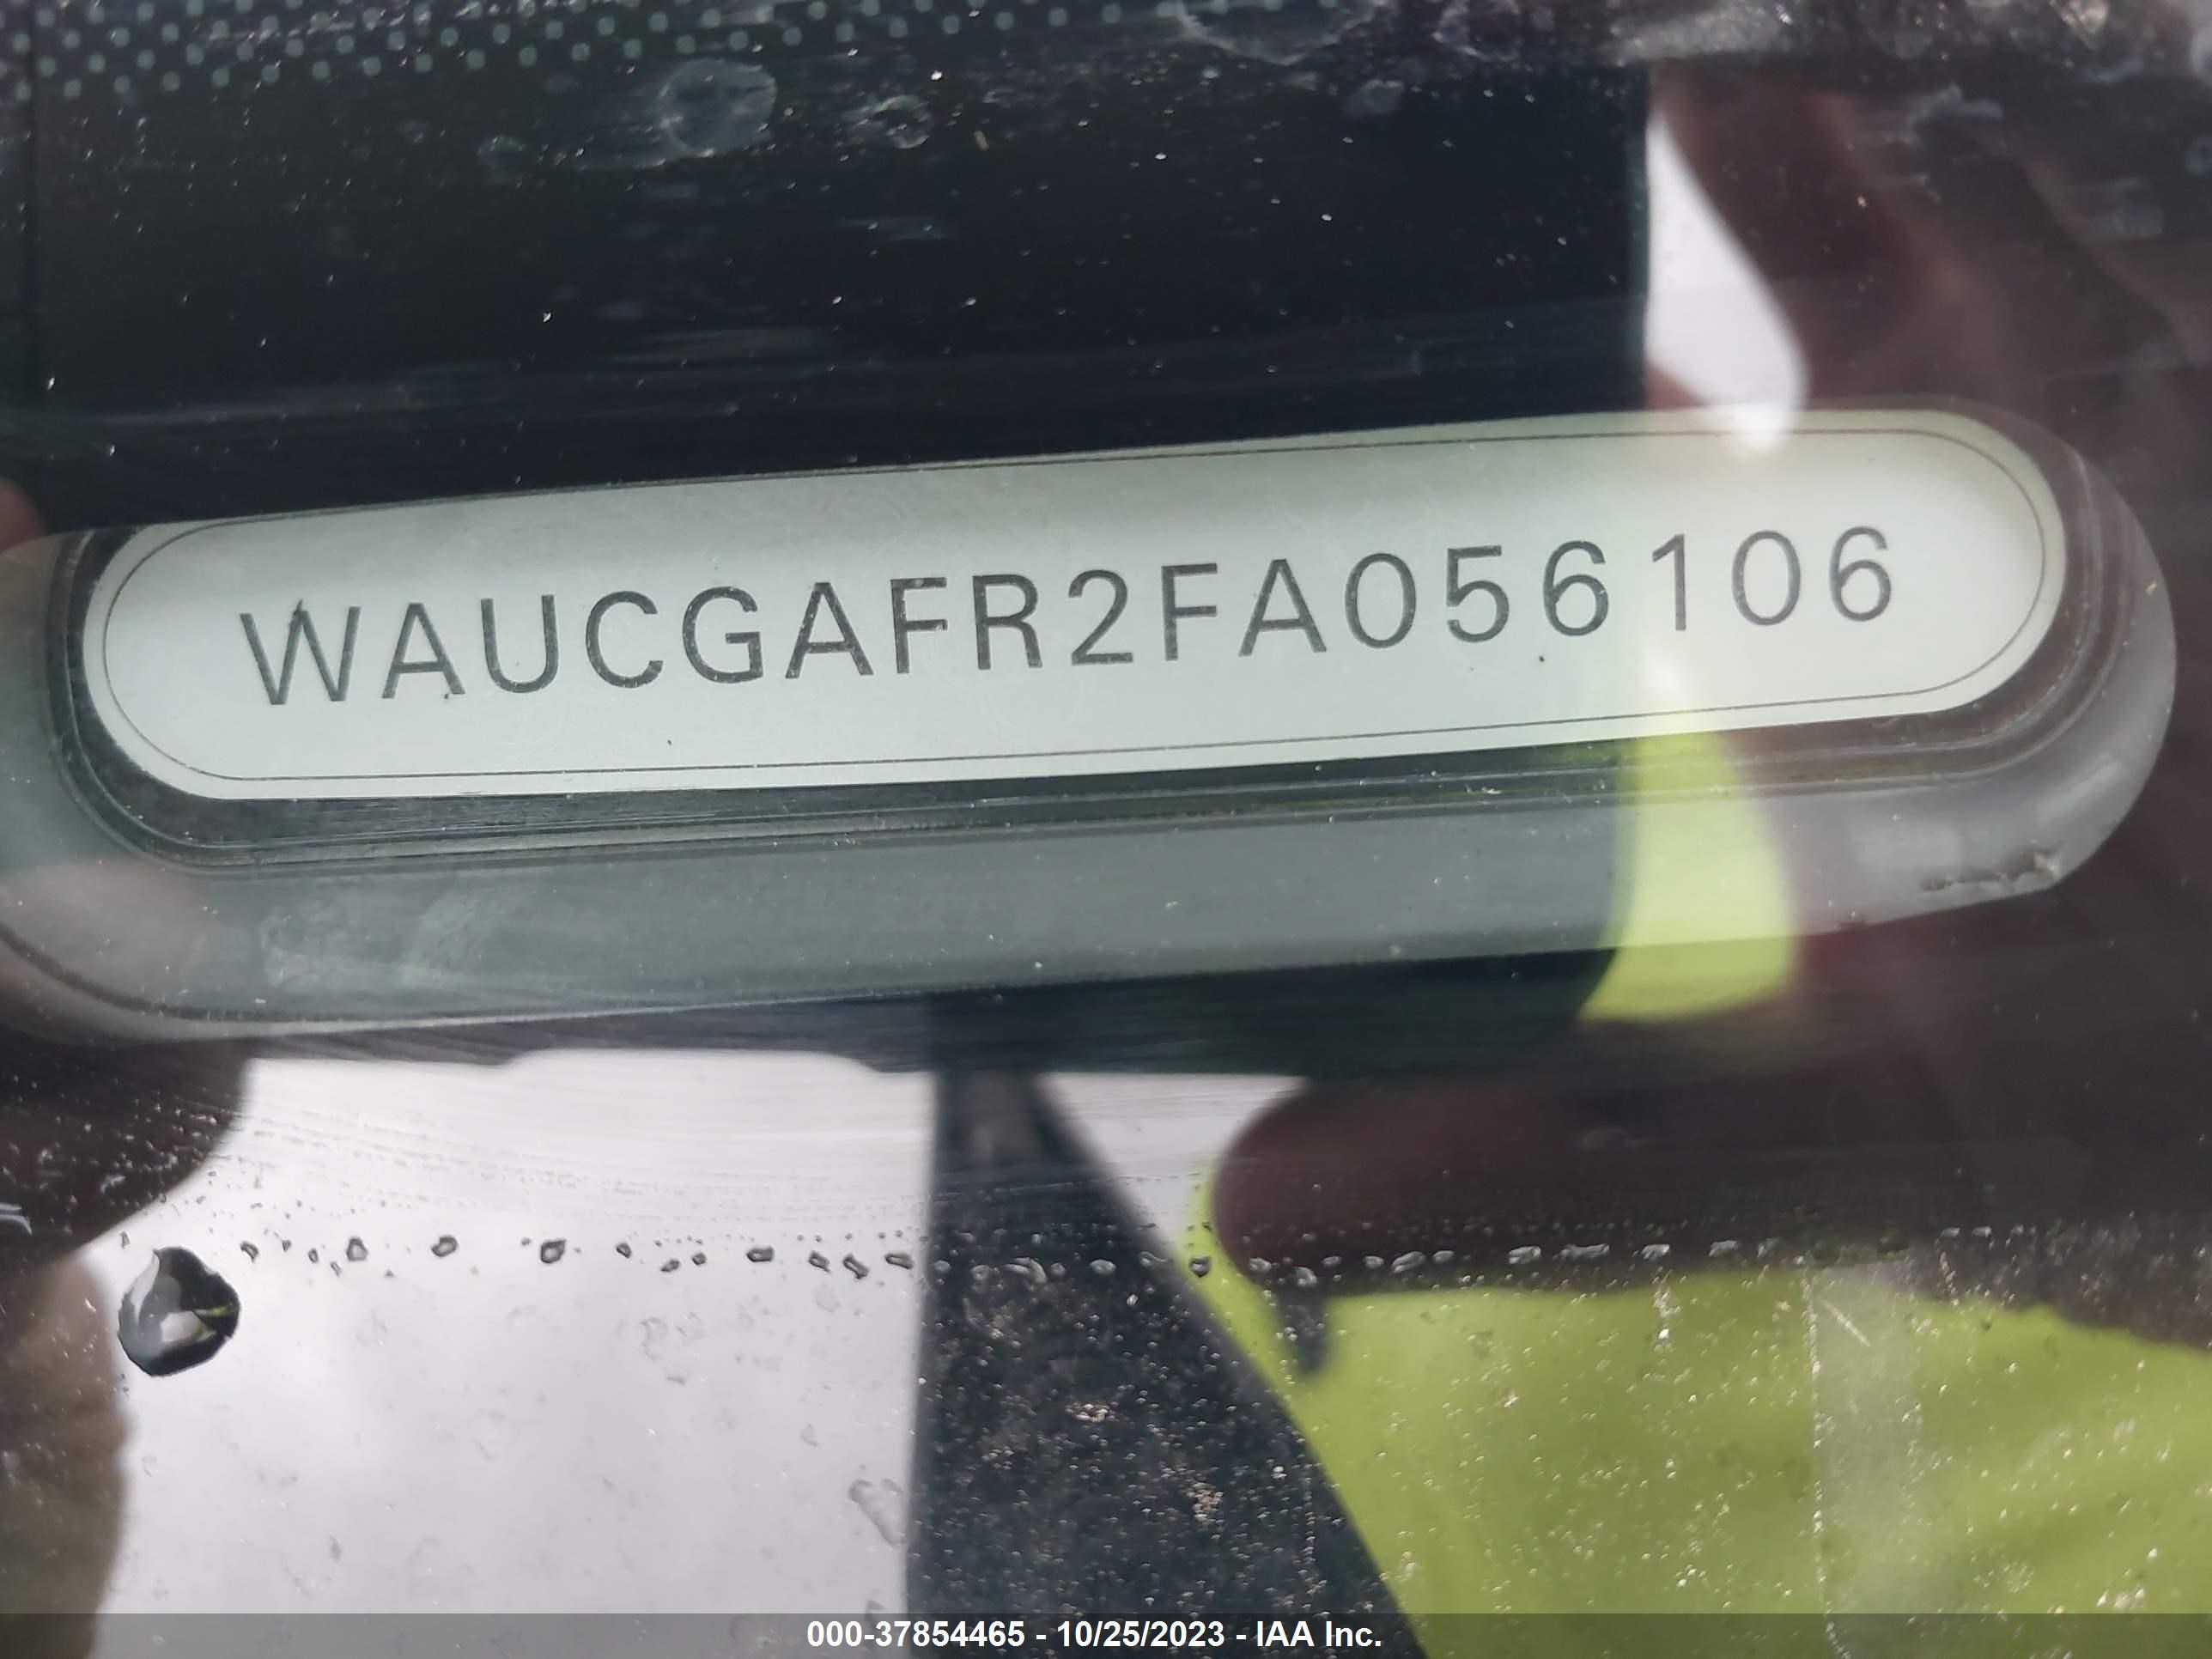 WAUCGAFR2FA056106  - AUDI S5  2015 IMG - 8